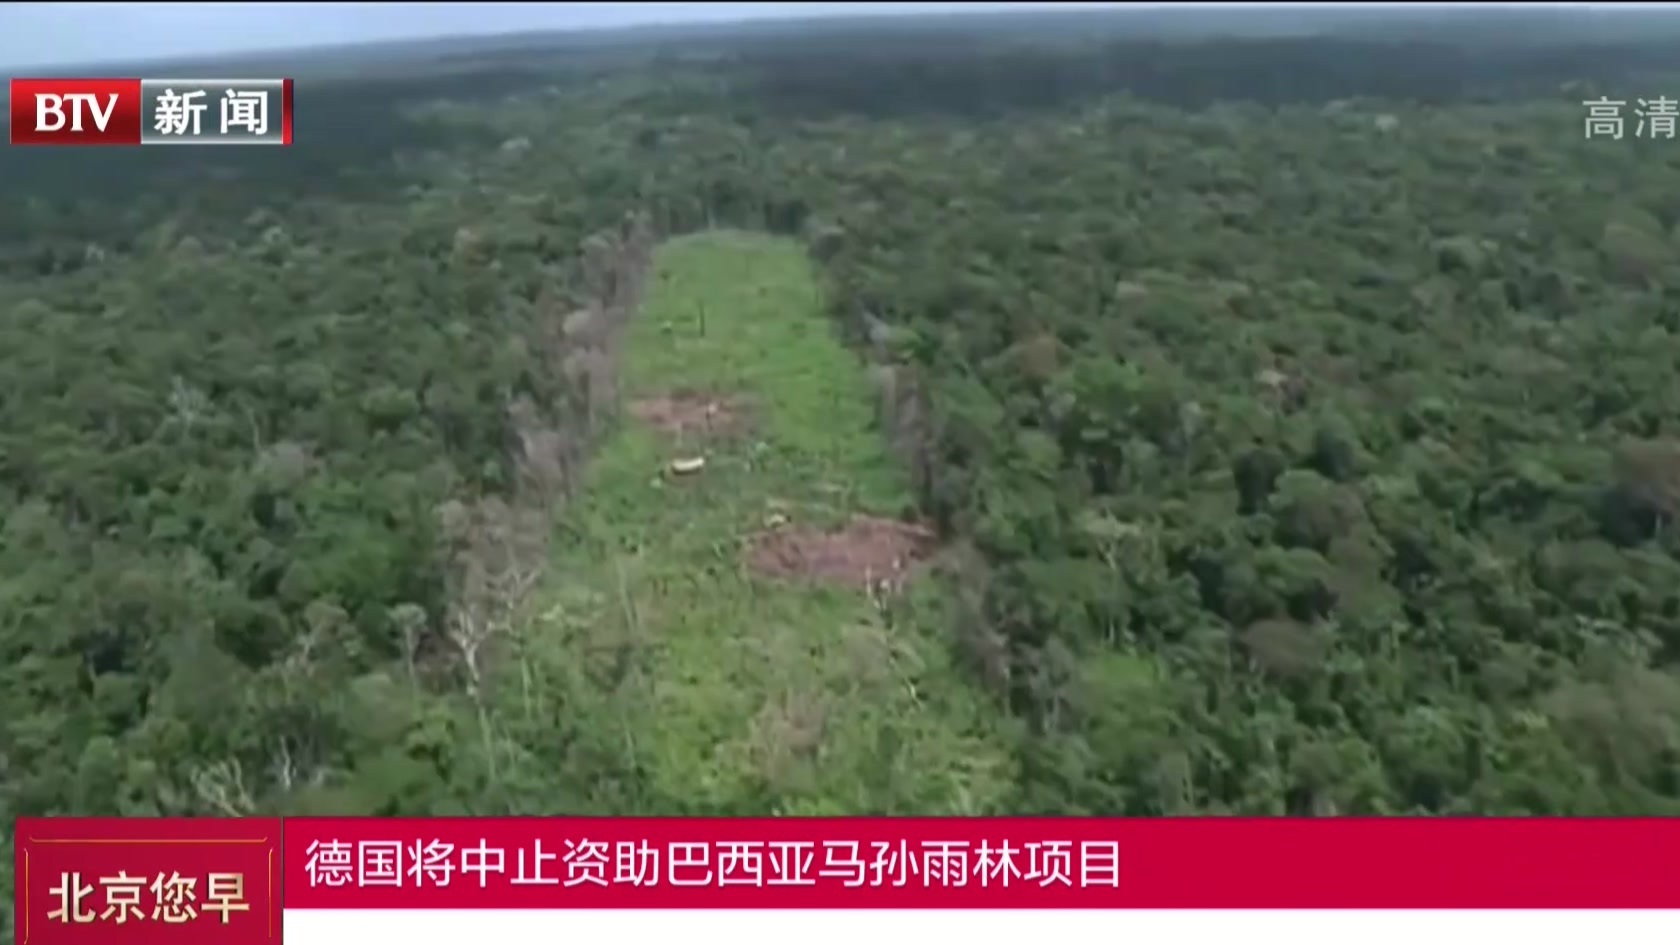 德国将中止资助巴西亚马孙雨林项目